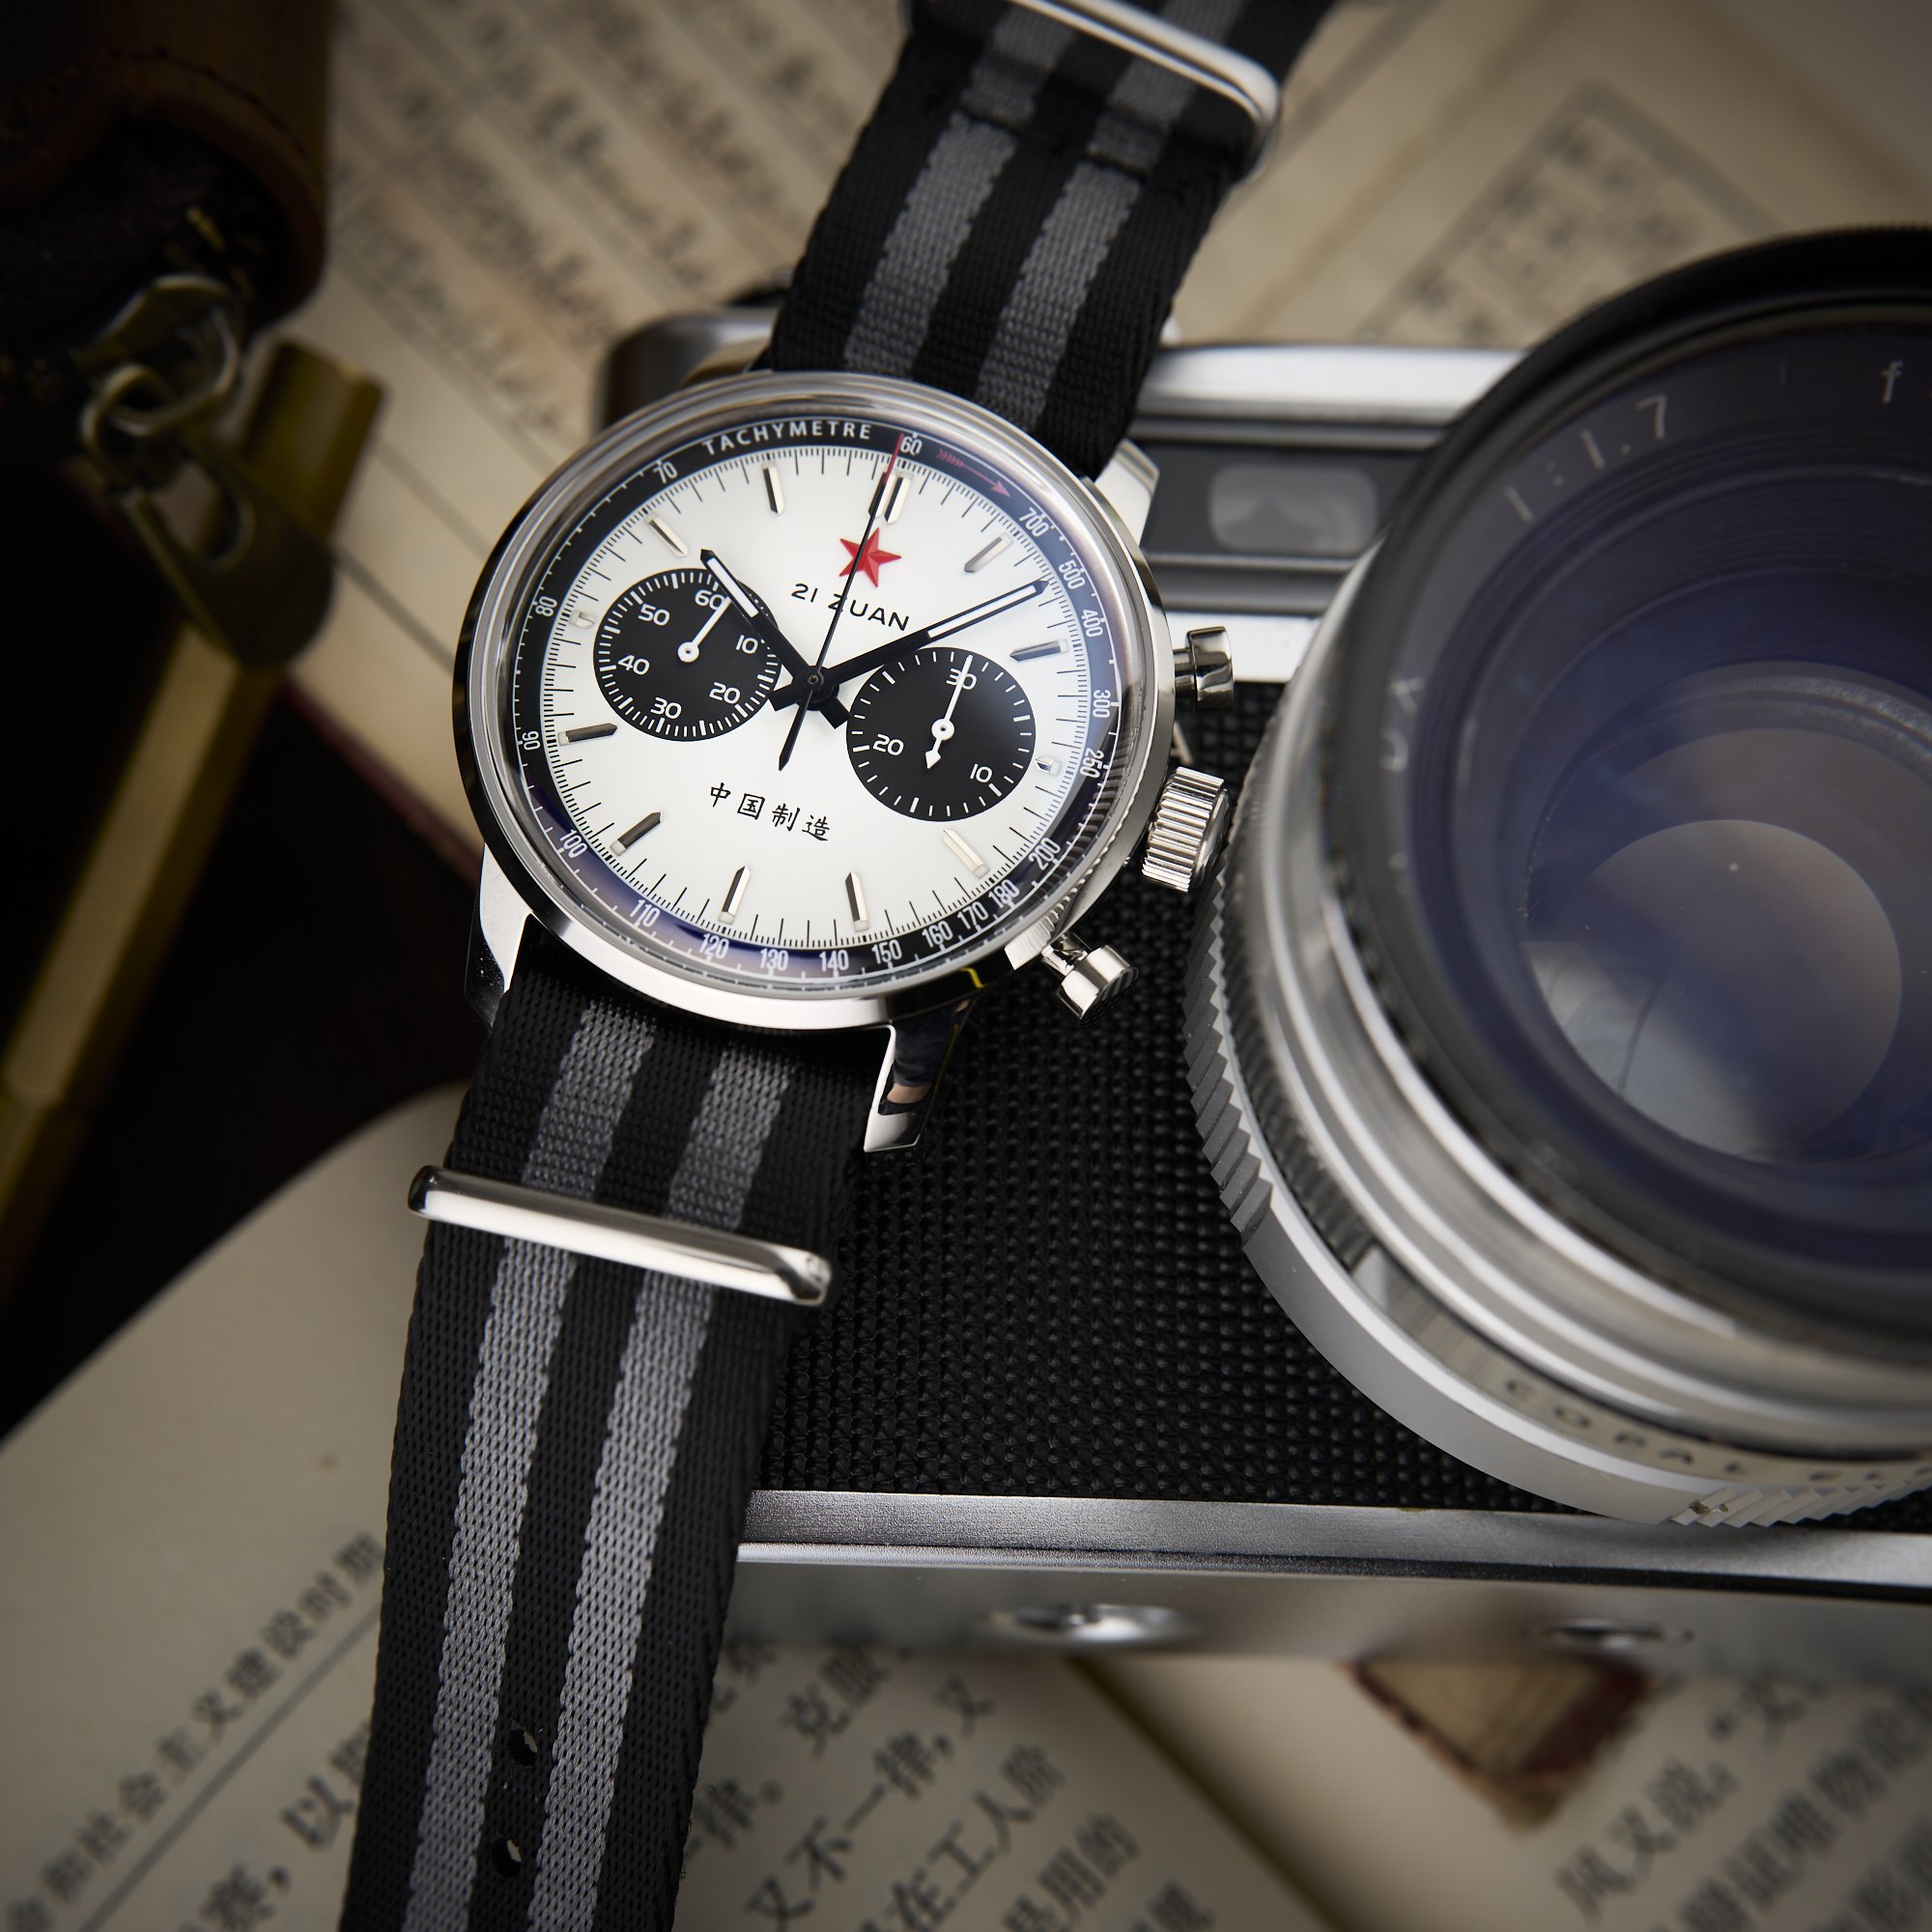 Classics Aviation 1963 Pilot Watch Retro Quartz Chronograph Army | eBay